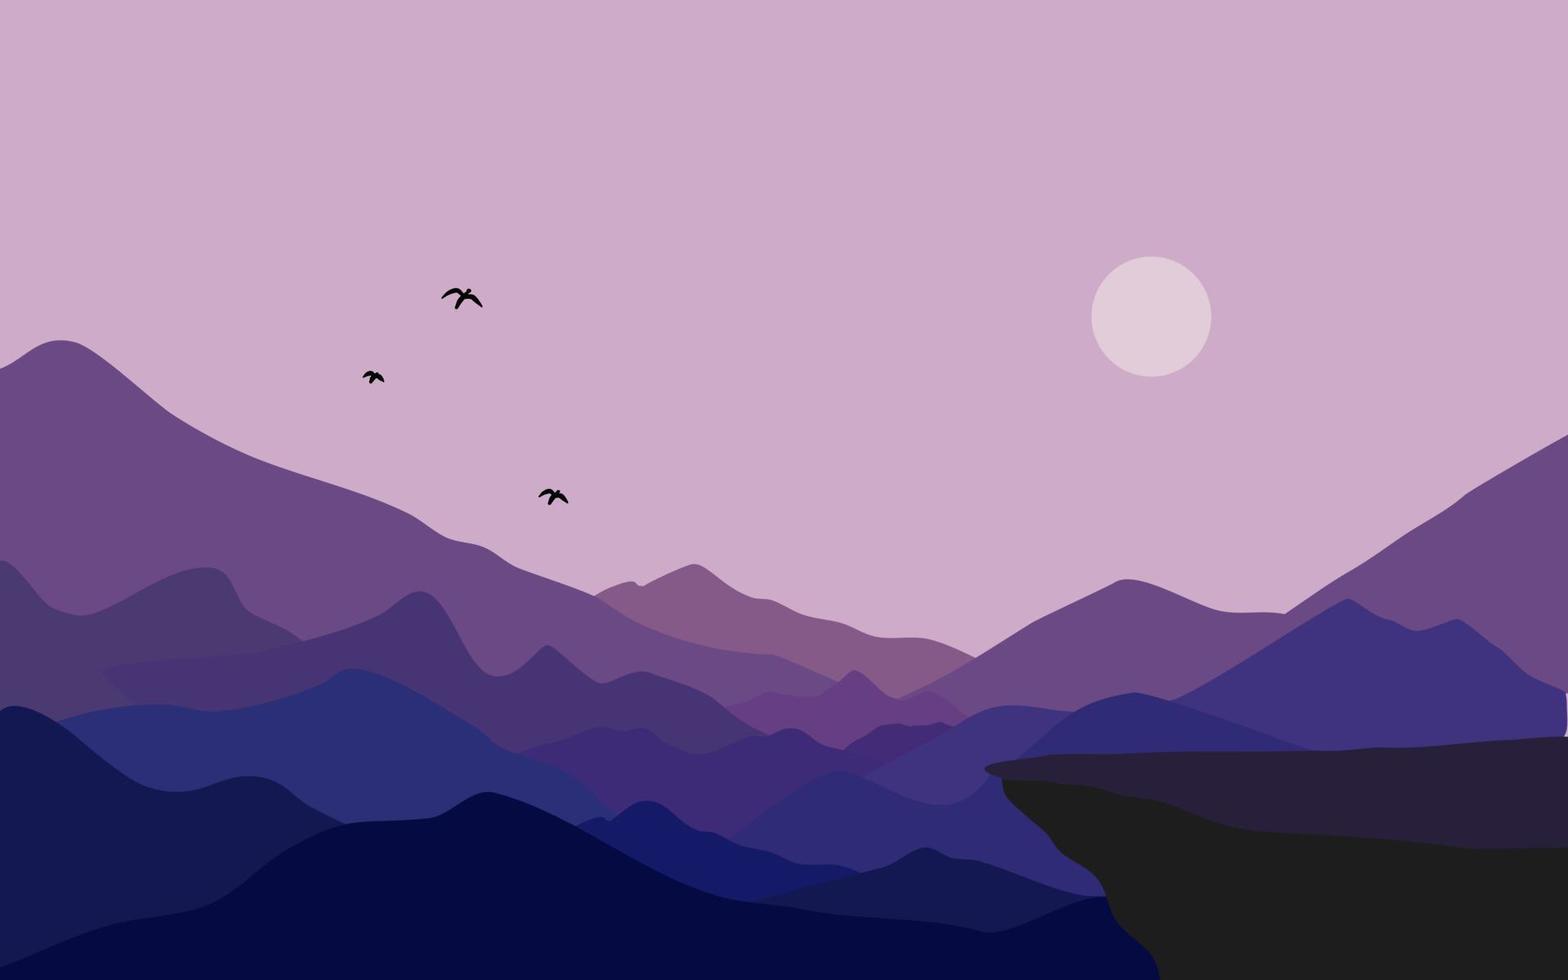 berg med klippa, måne, och fågel på natt landskap bakgrund vektor